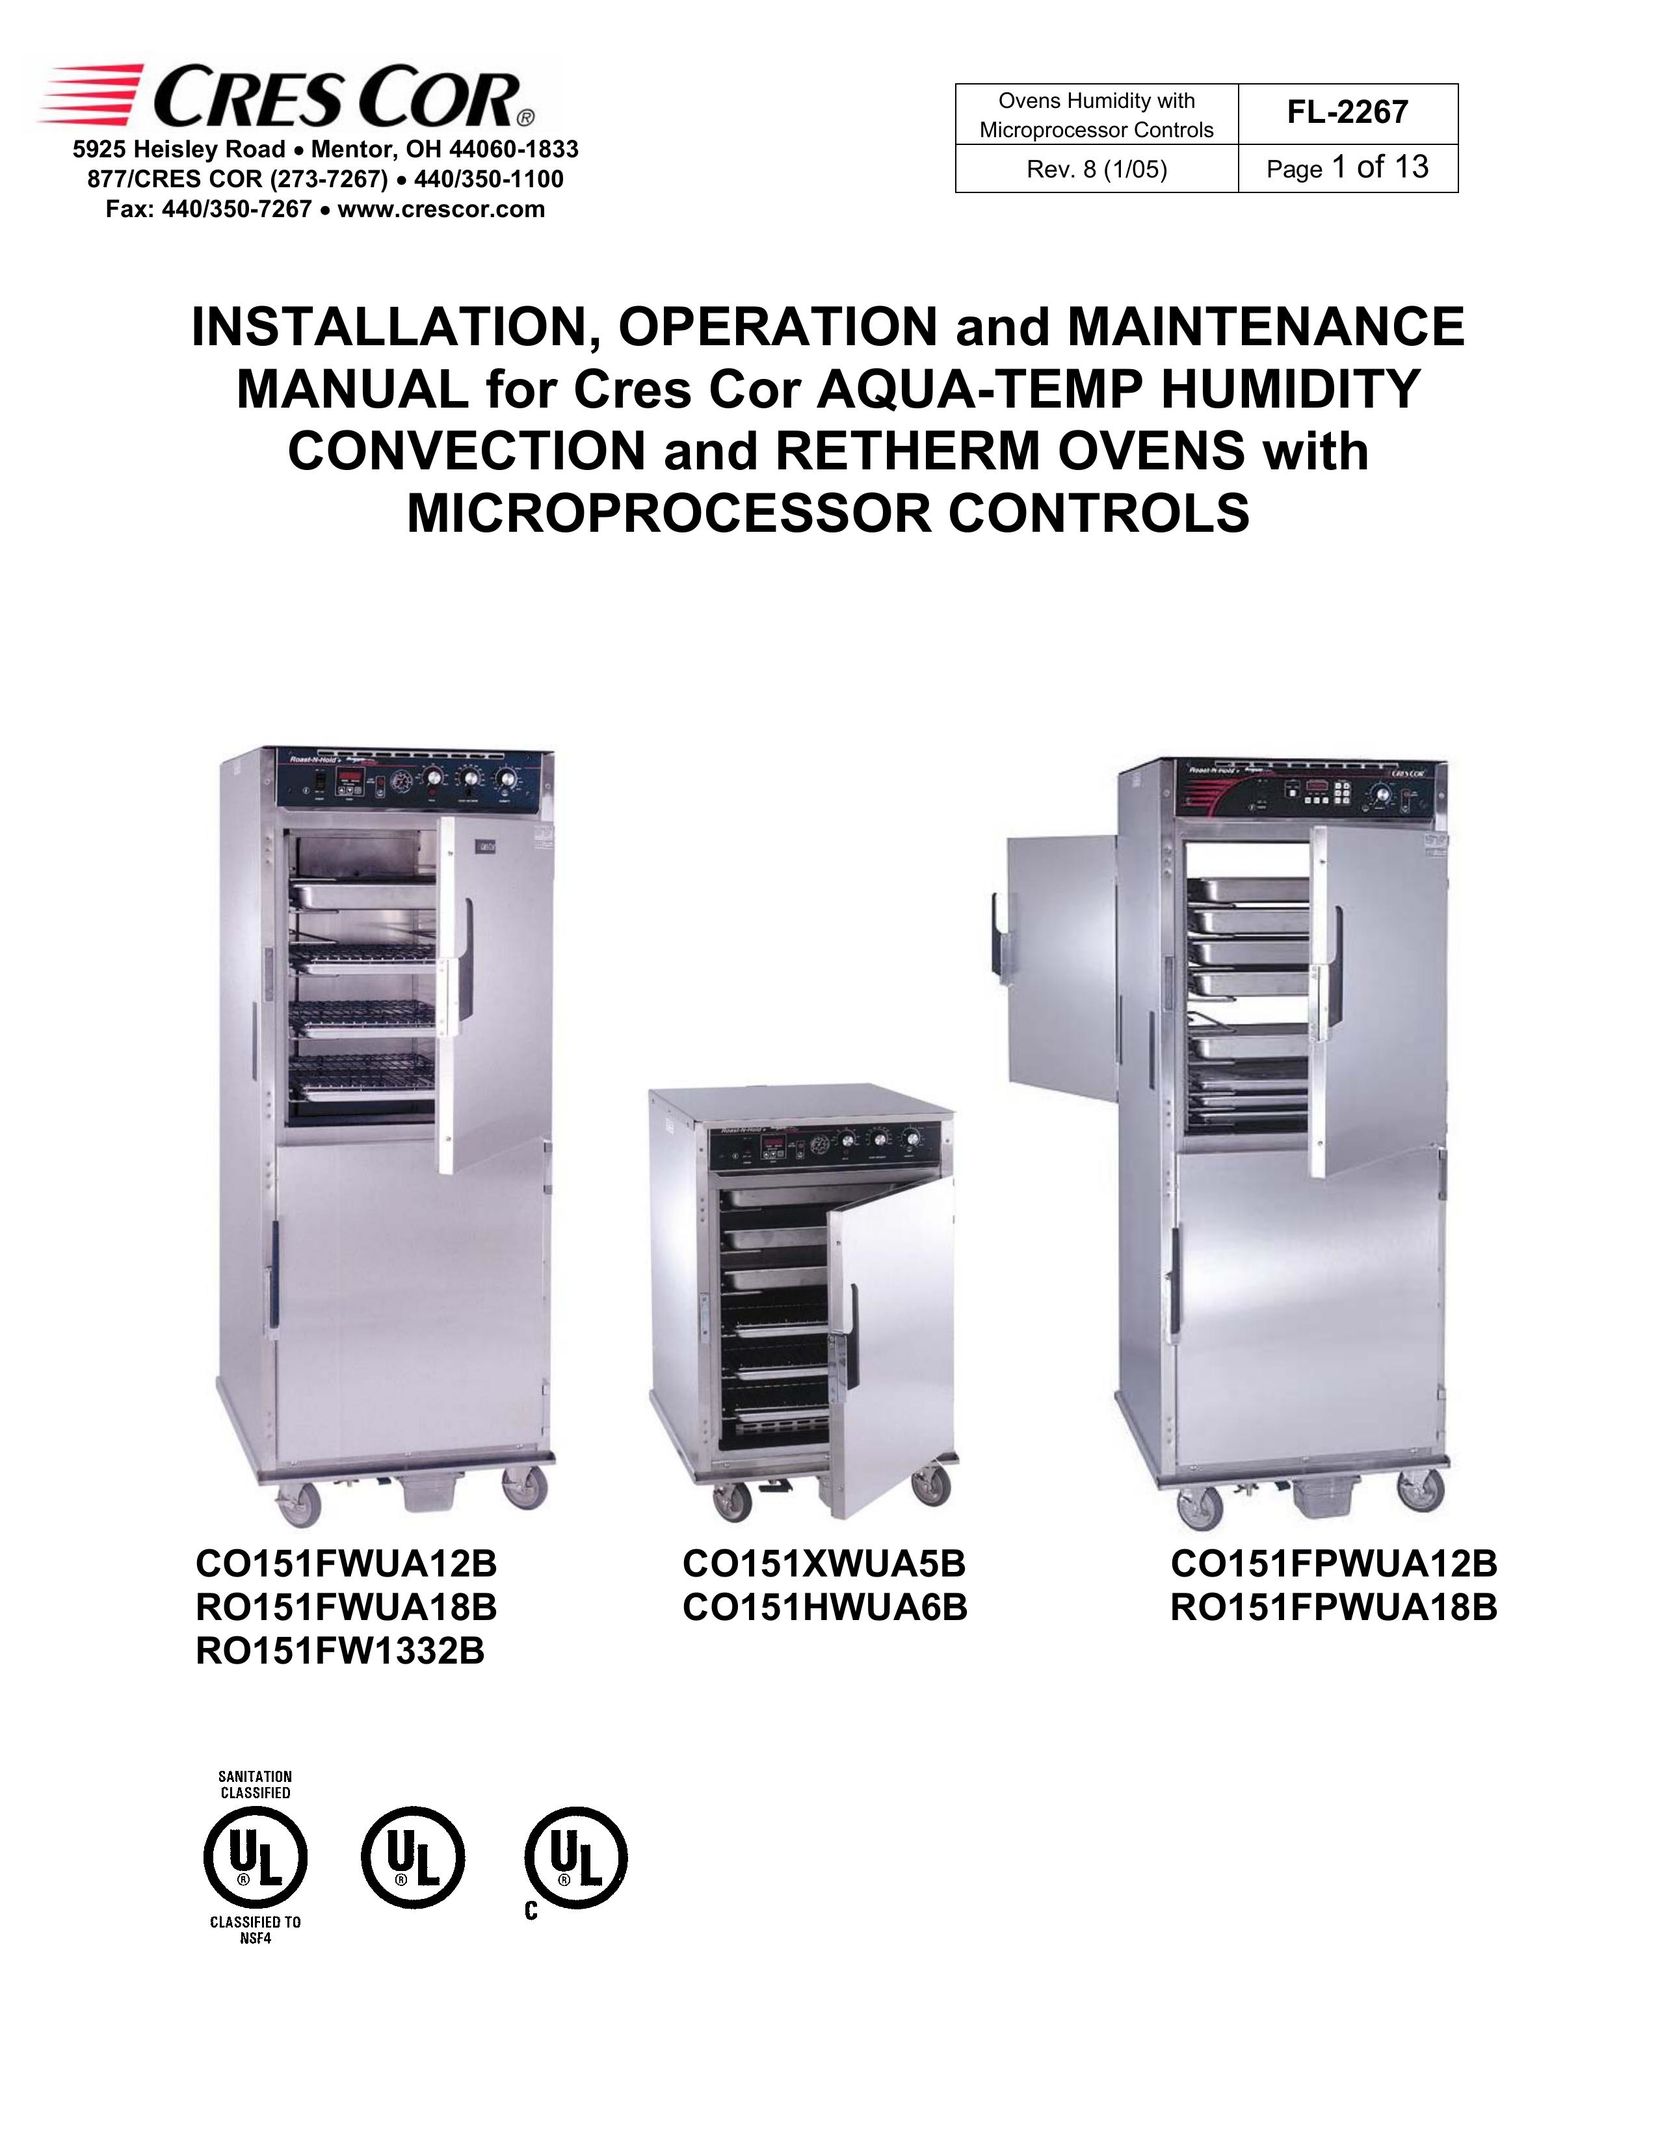 Cres Cor RO151FPWUA12B Convection Oven User Manual